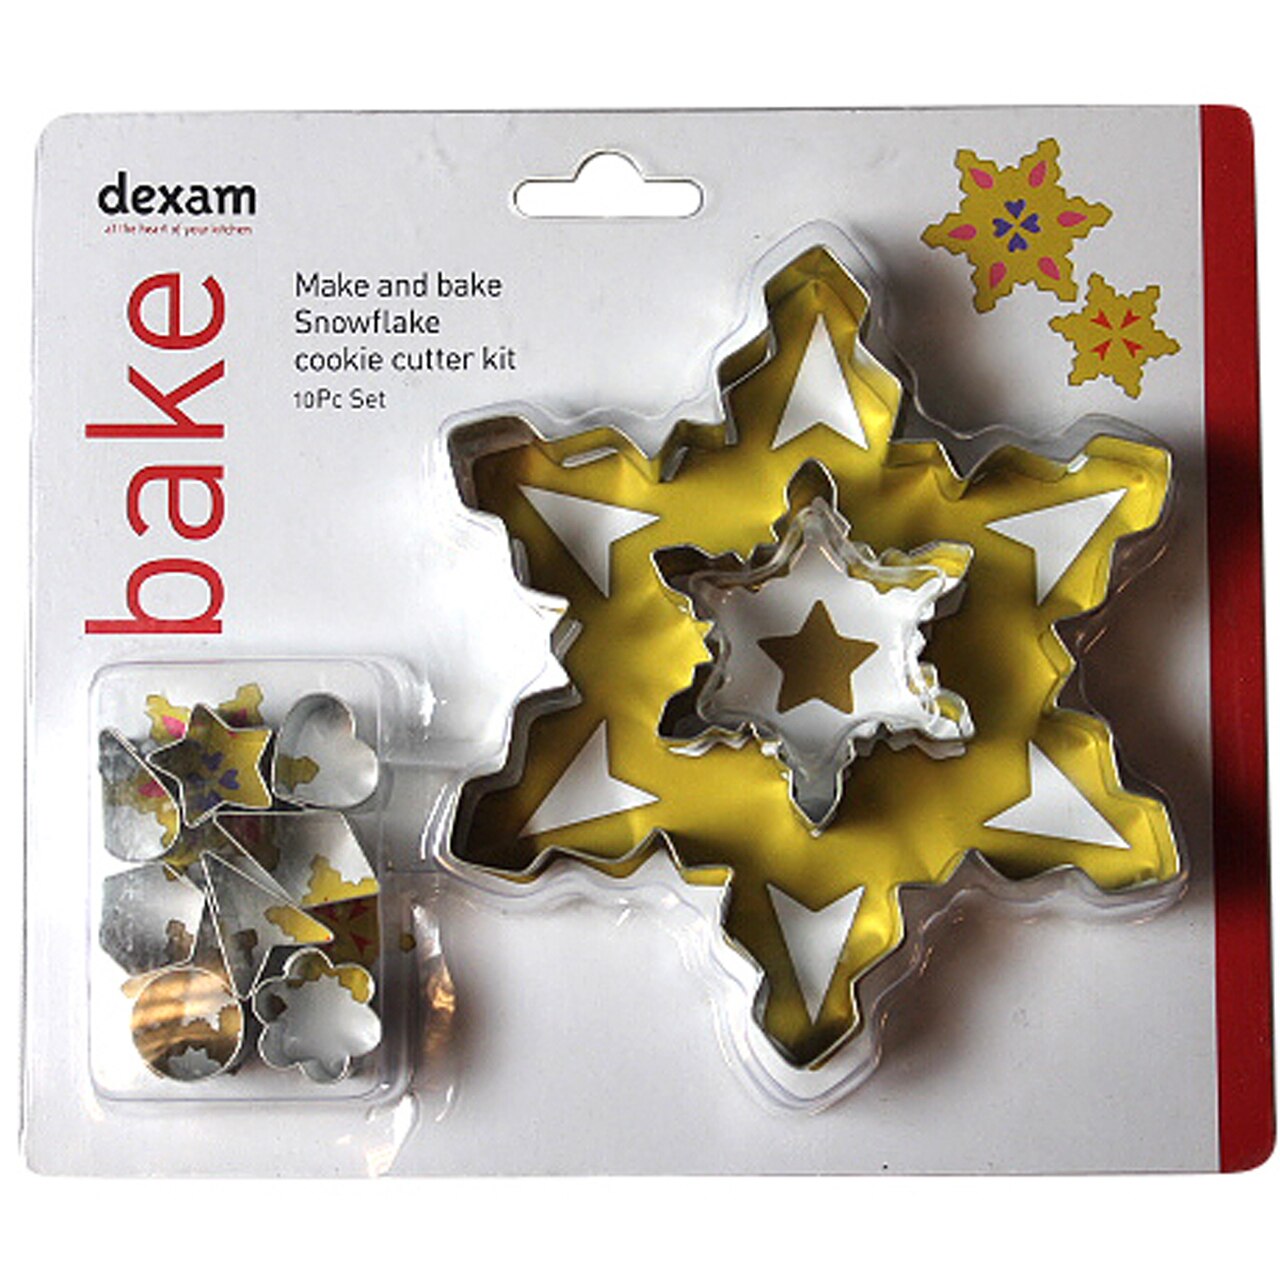 Dexam Make & Bake Snowflake Cookie Cutter Kit